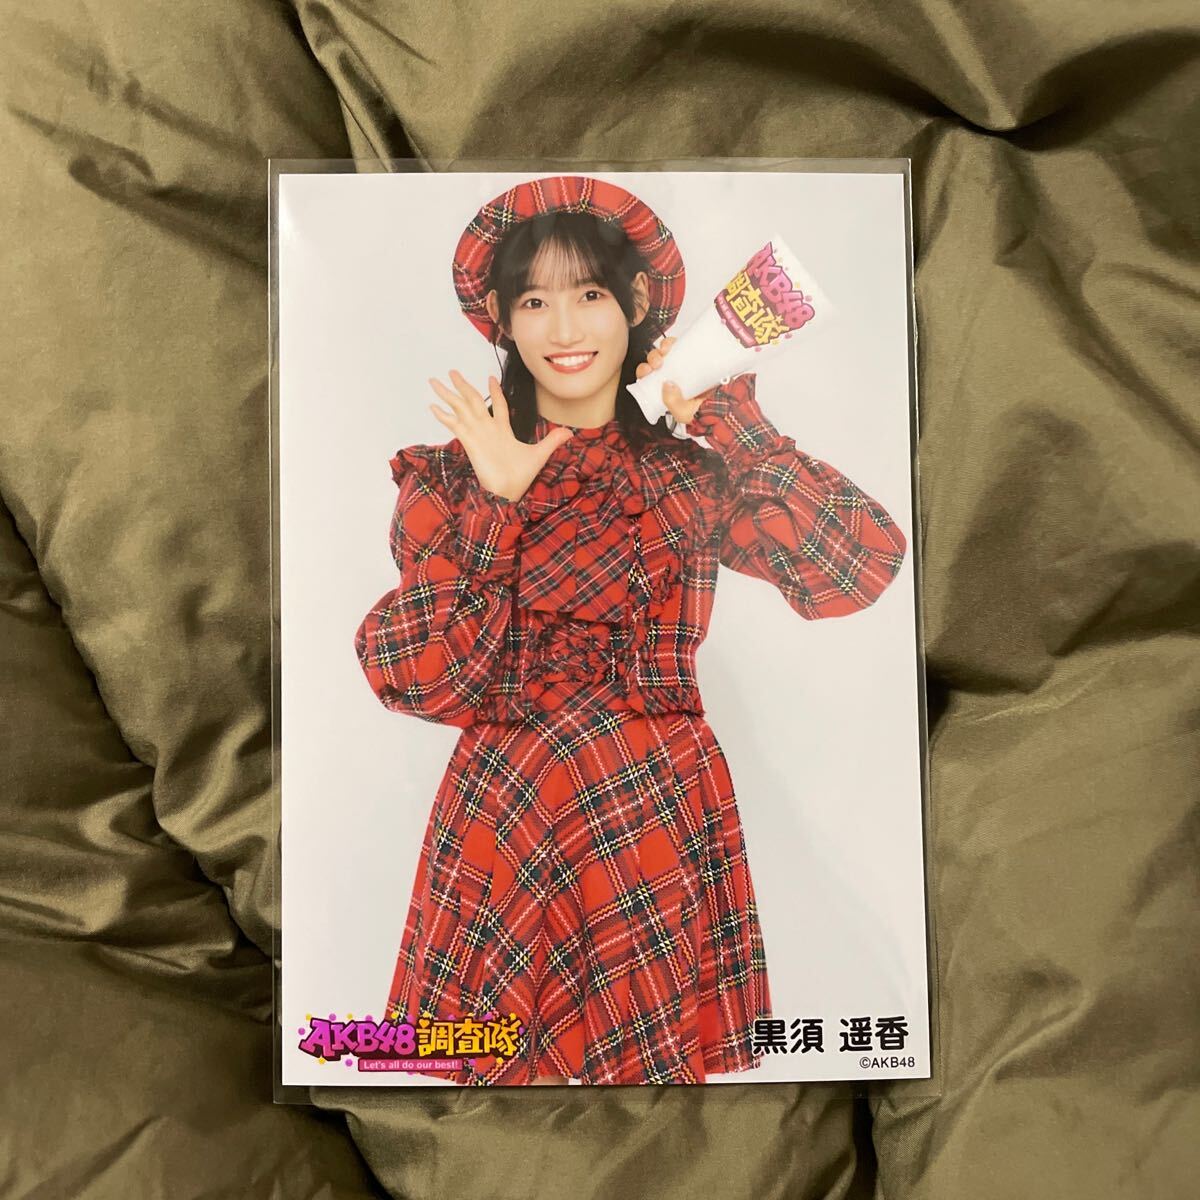 AKB48 黒須遥香 AKB48調査隊 ランダム生写真 赤チェック衣装_画像1